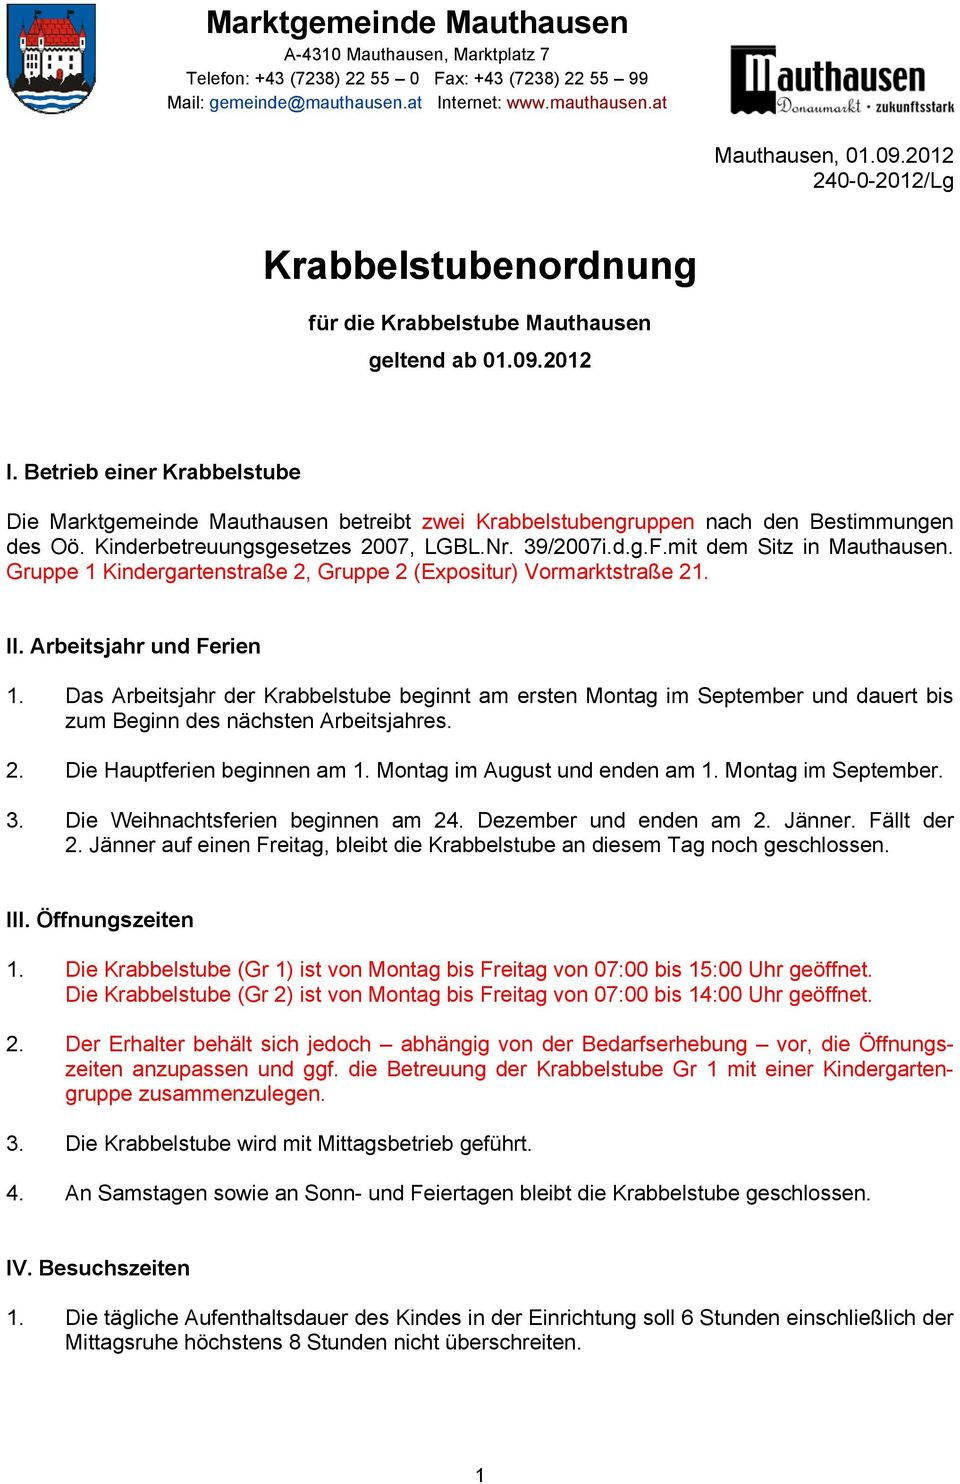 Betrieb einer Krabbelstube Die Marktgemeinde Mauthausen betreibt zwei Krabbelstubengruppen nach den Bestimmungen des Oö. Kinderbetreuungsgesetzes 2007, LGBL.Nr. 39/2007i.d.g.F.